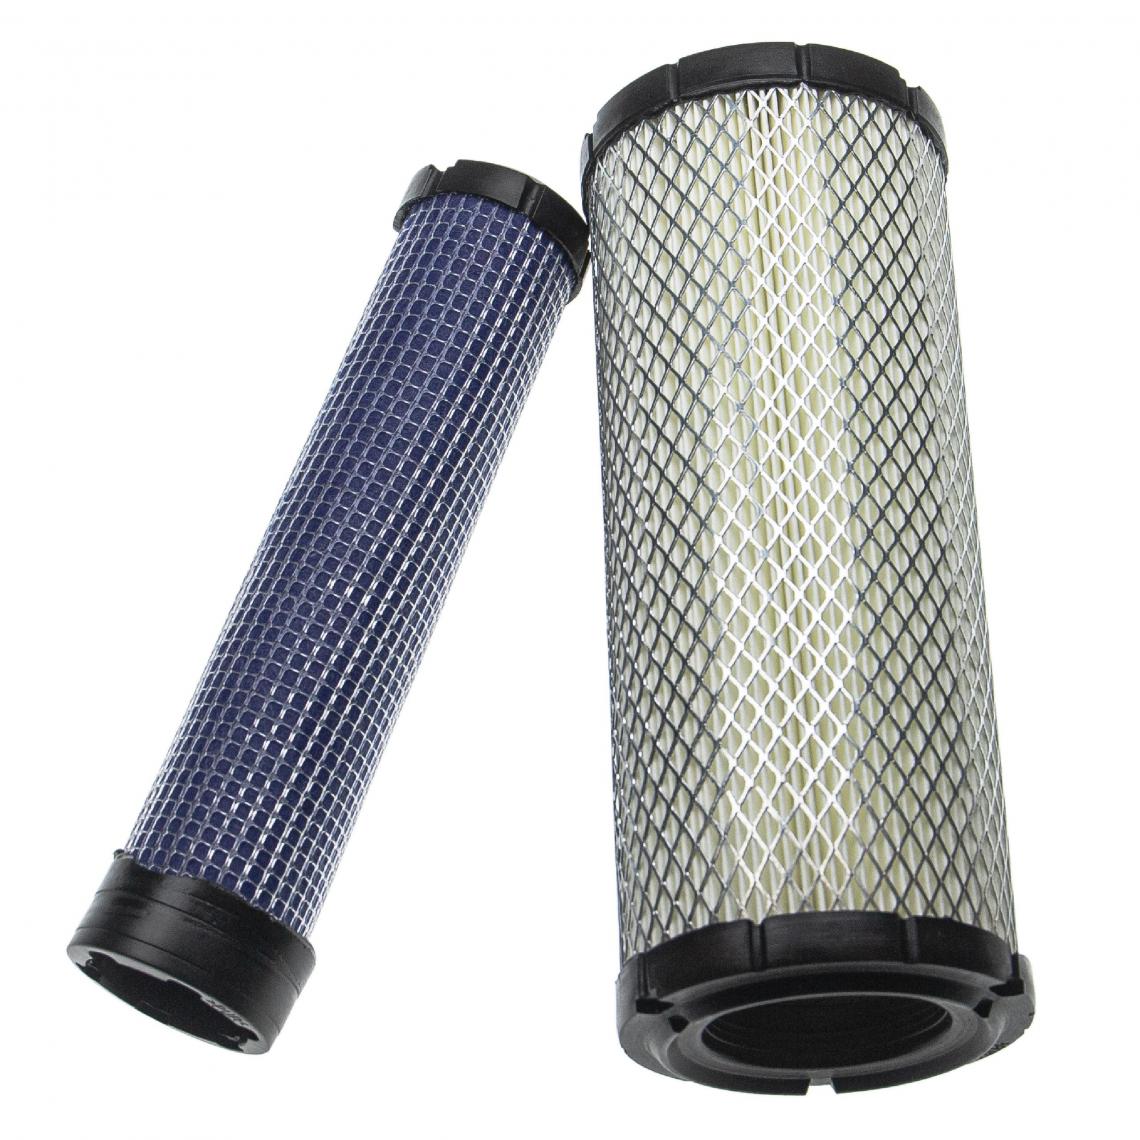 Vhbw - vhbw Lot de filtres compatible avec Vermeer RD16, RT450, RT56SC, RT56SC2, RT82SC, RTX450 engin de chantier; 1x filtre interne, 1x filtre extérieur - Autre appareil de mesure